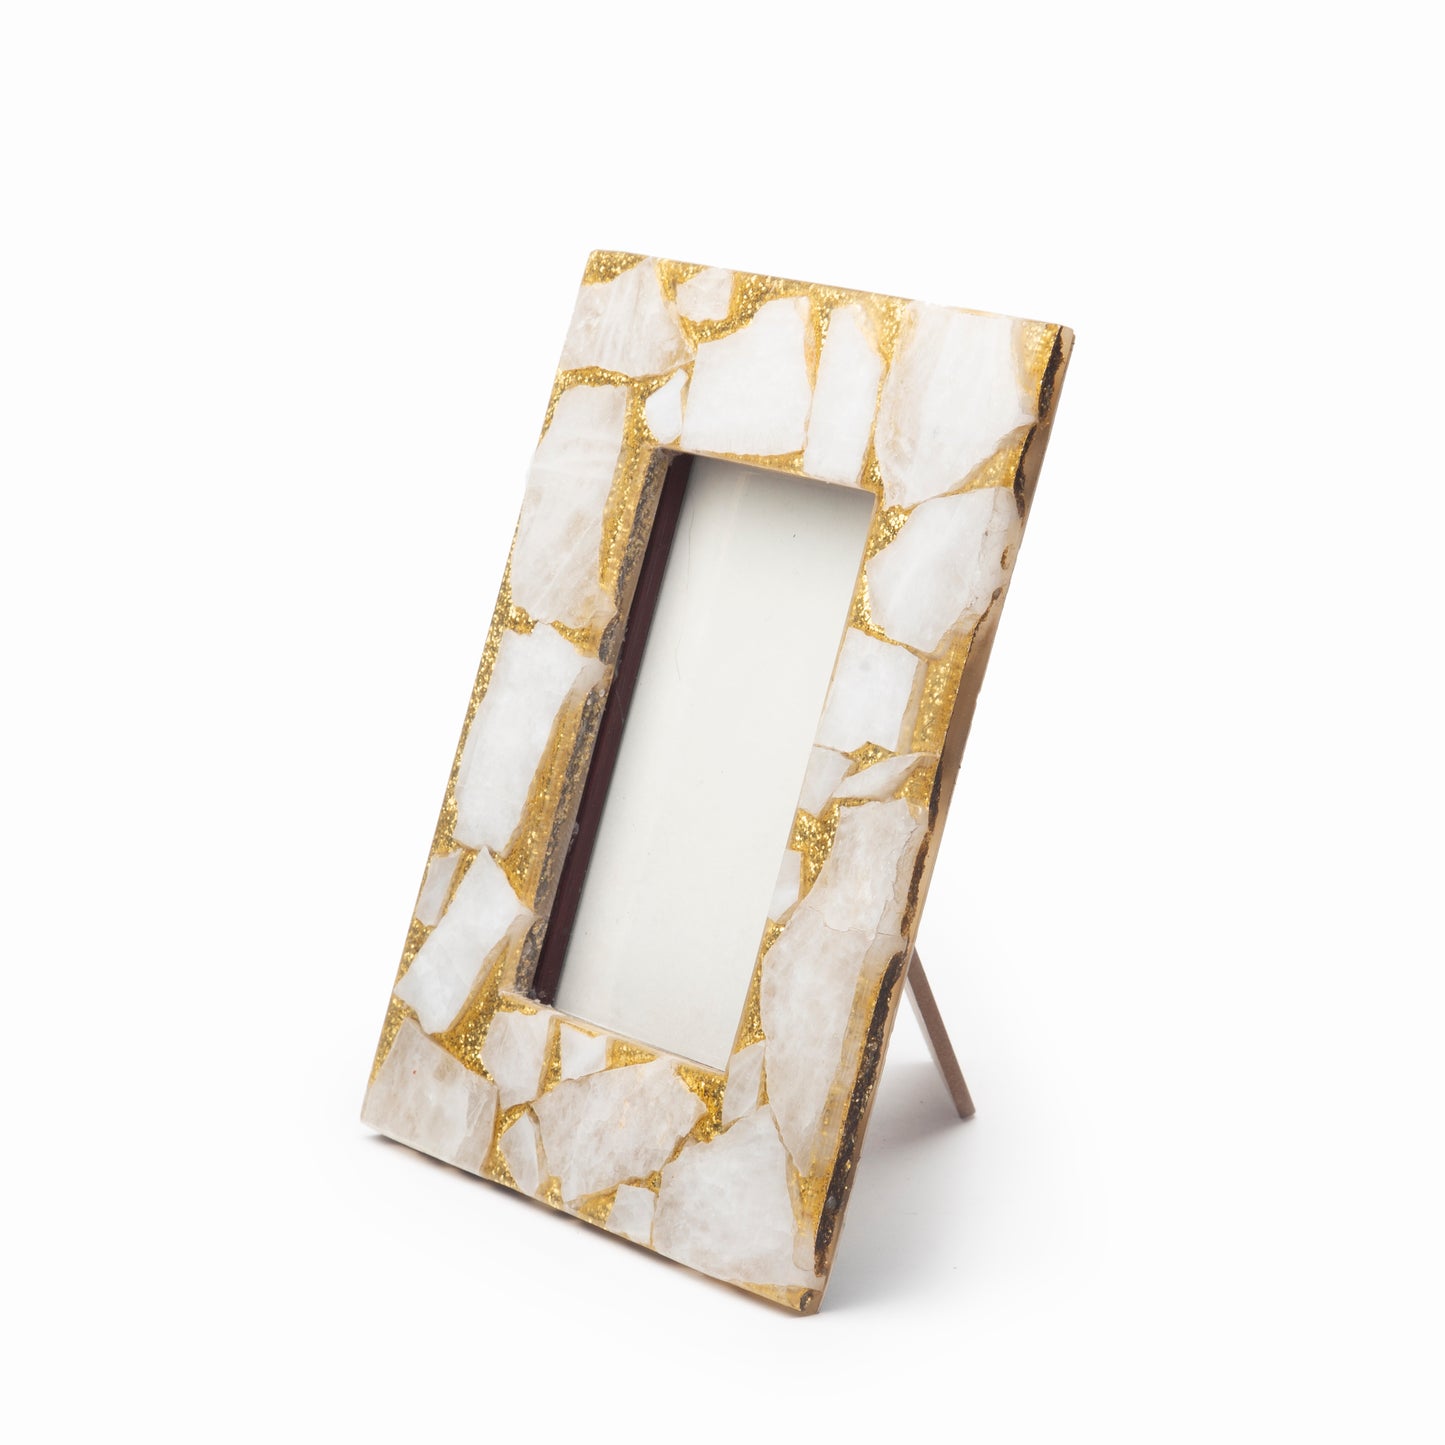 Stone Plus India White Quartz with Golden Frame